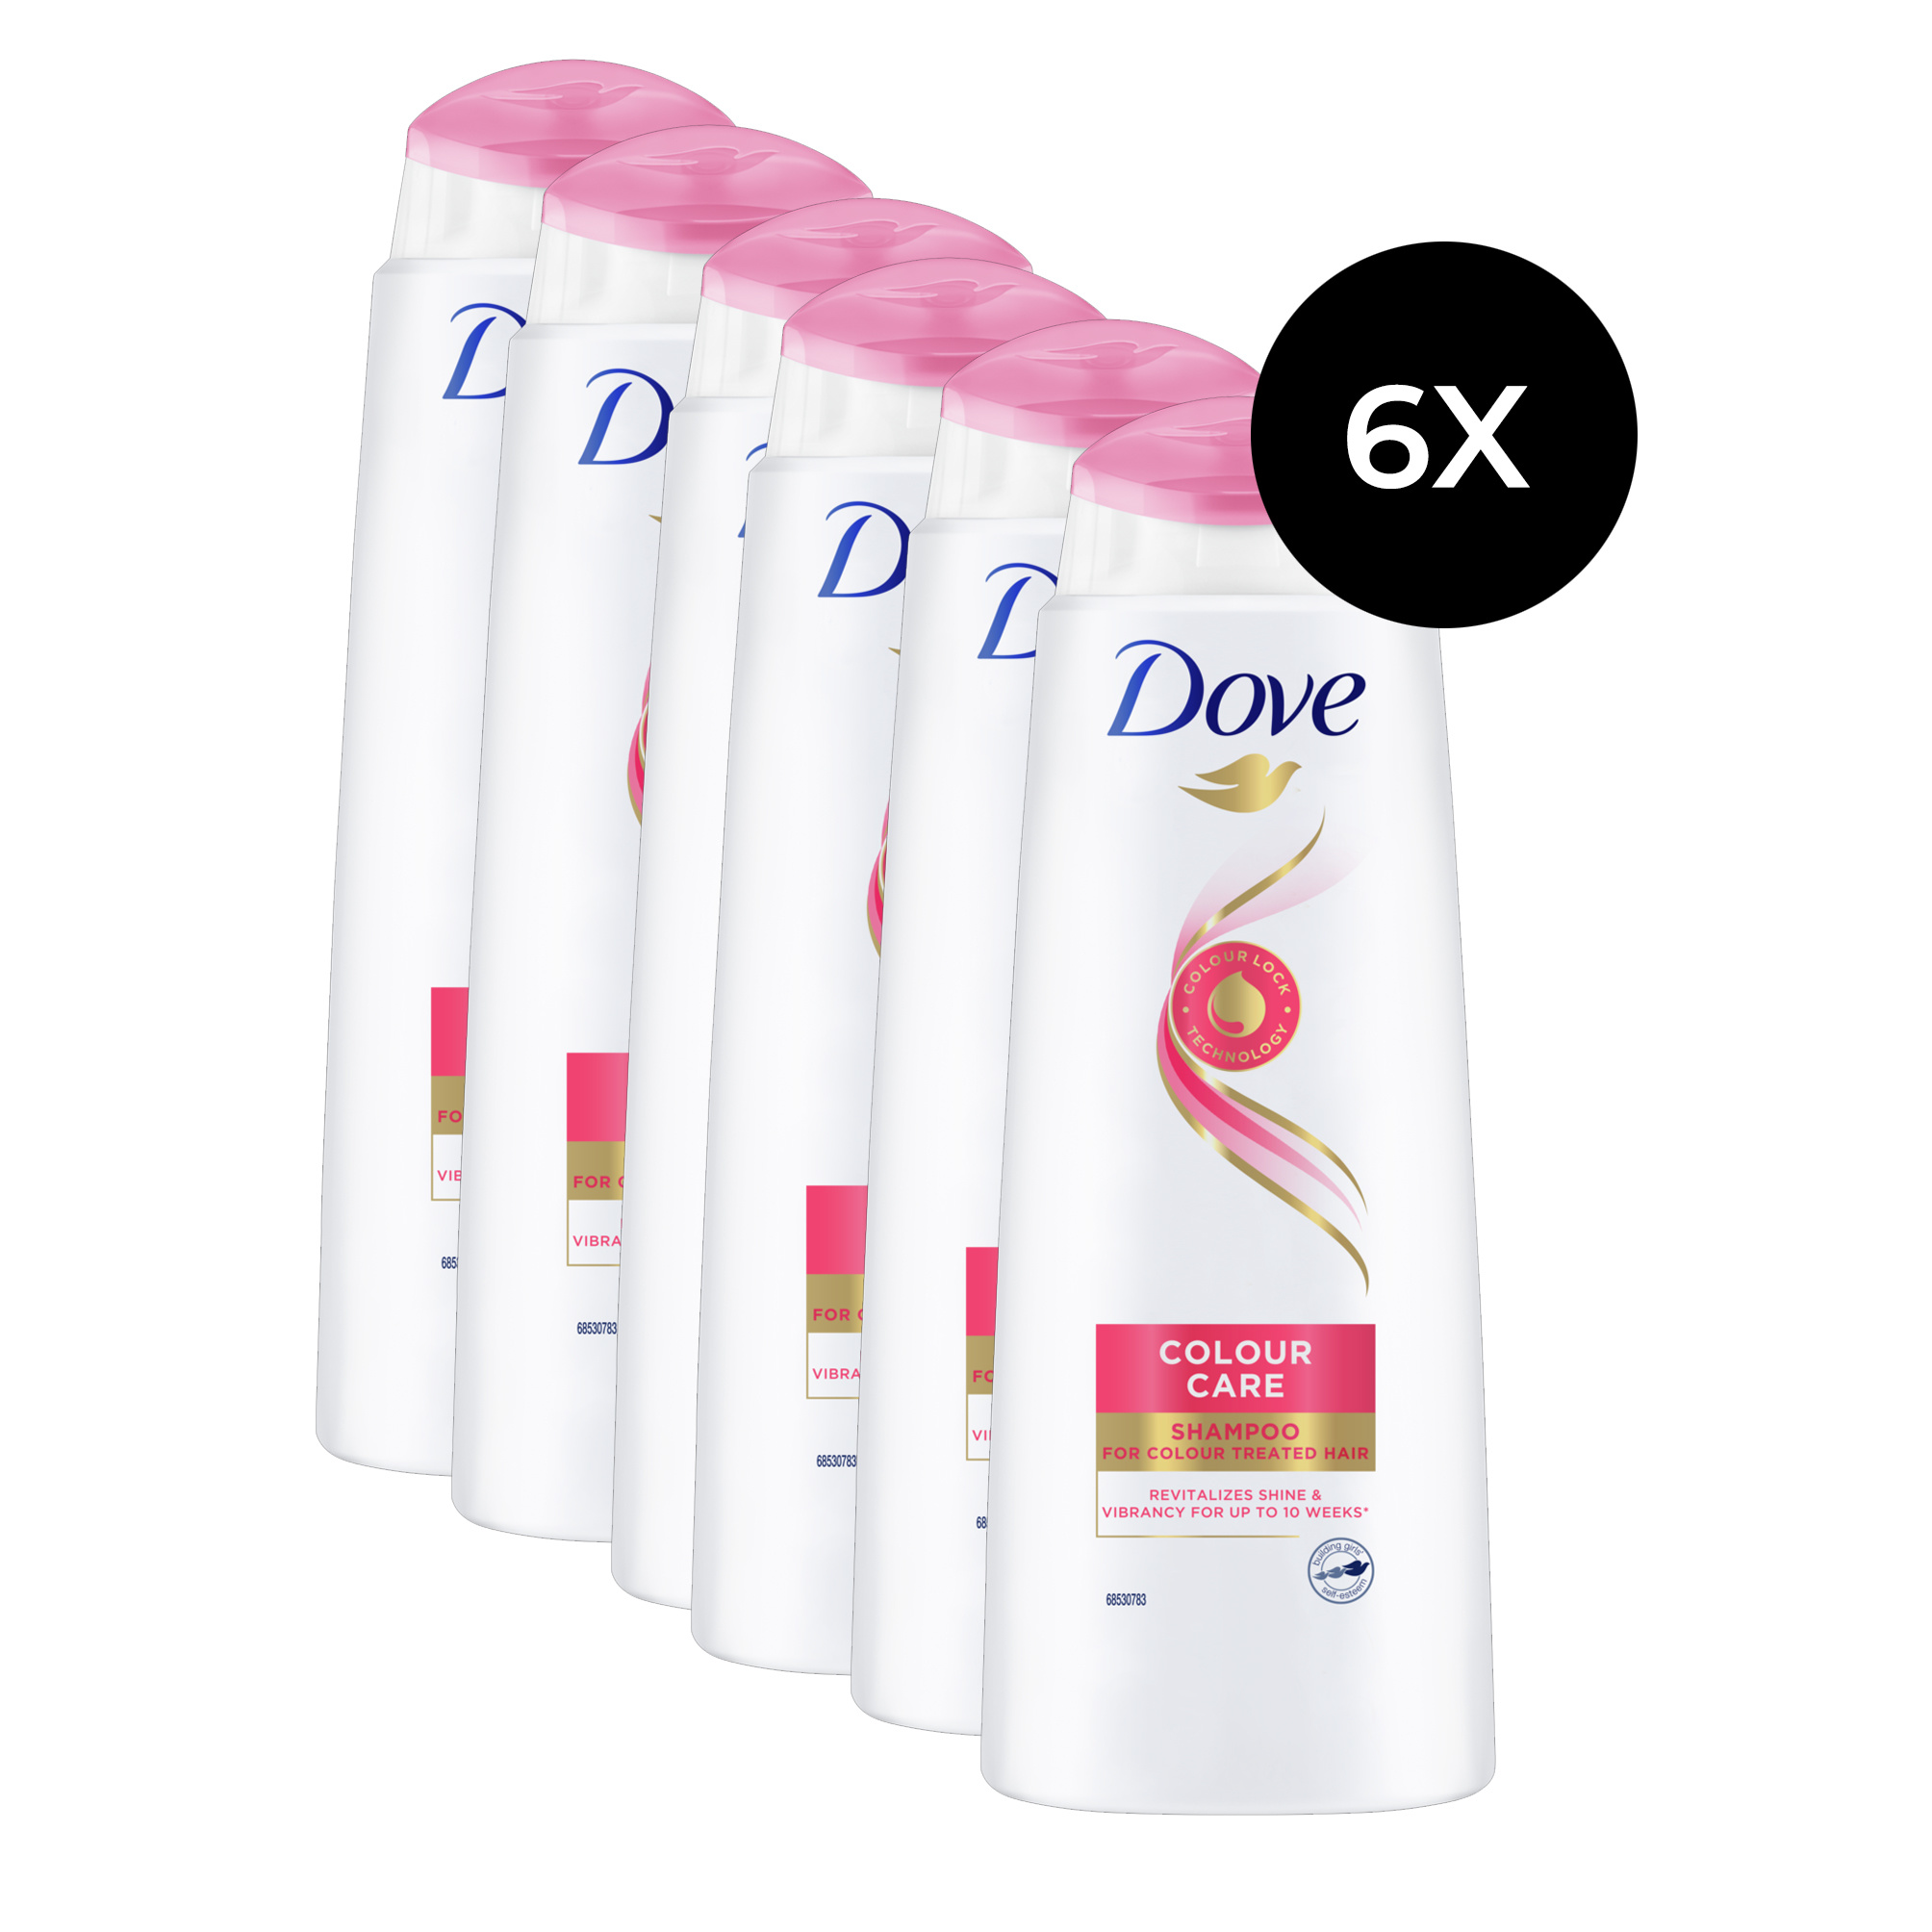 Dove Colour Care Shampooing - 6x 400 ml (pour cheveux colorés)